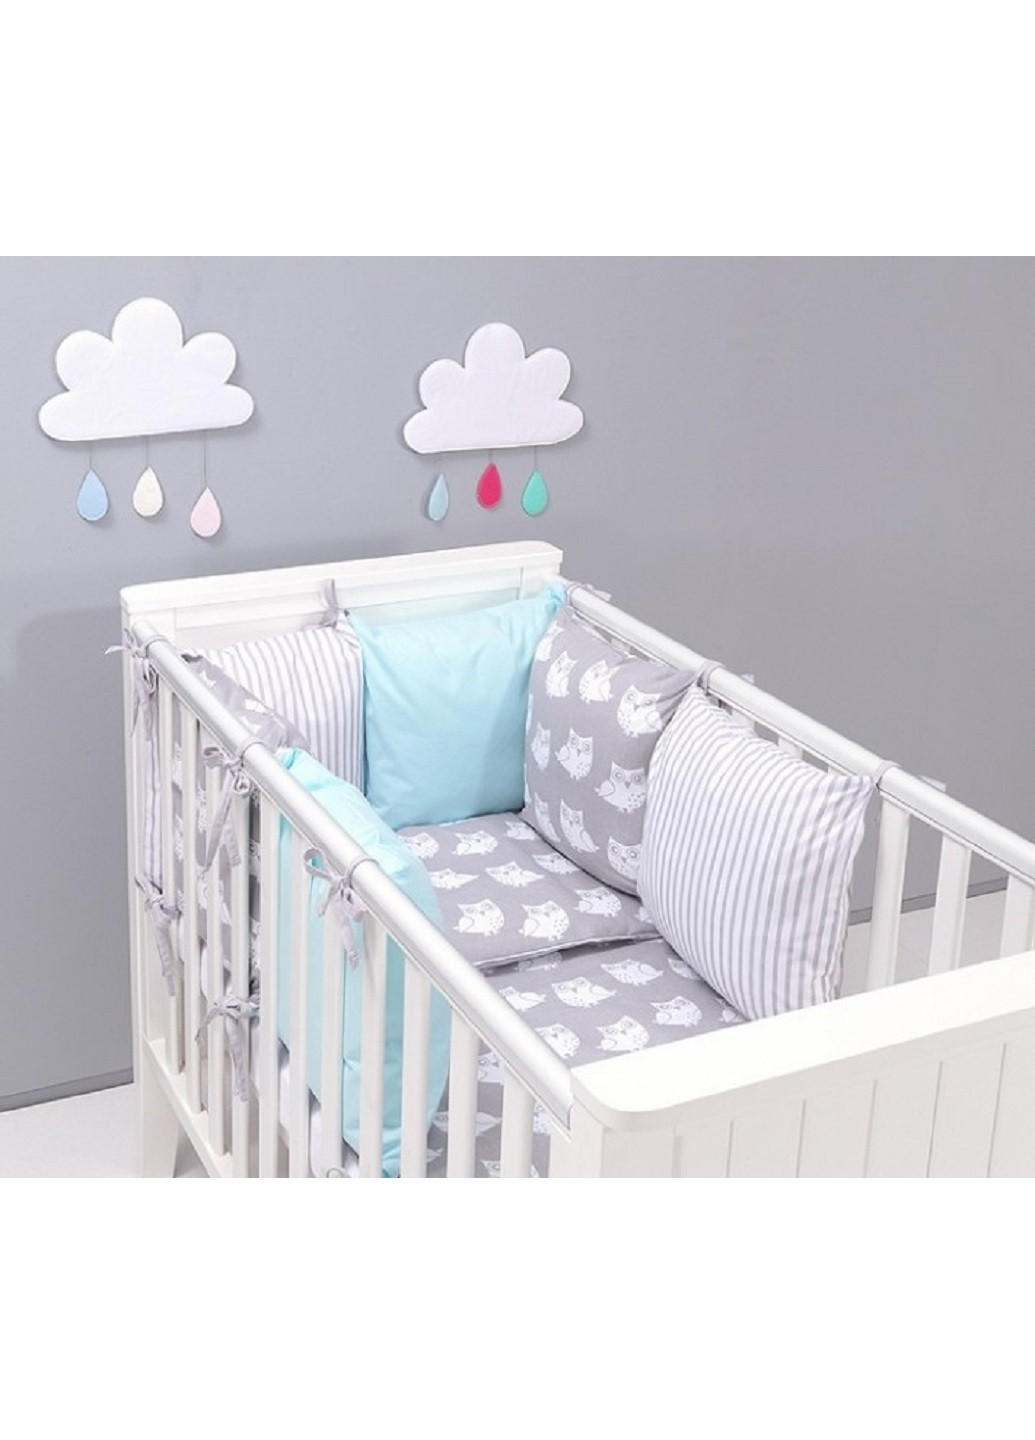 Комплект в детскую кроватку кровать люльку набор бортики защита на три стороны постельное белье ручной работы (28608-Нов) Unbranded (253257106)